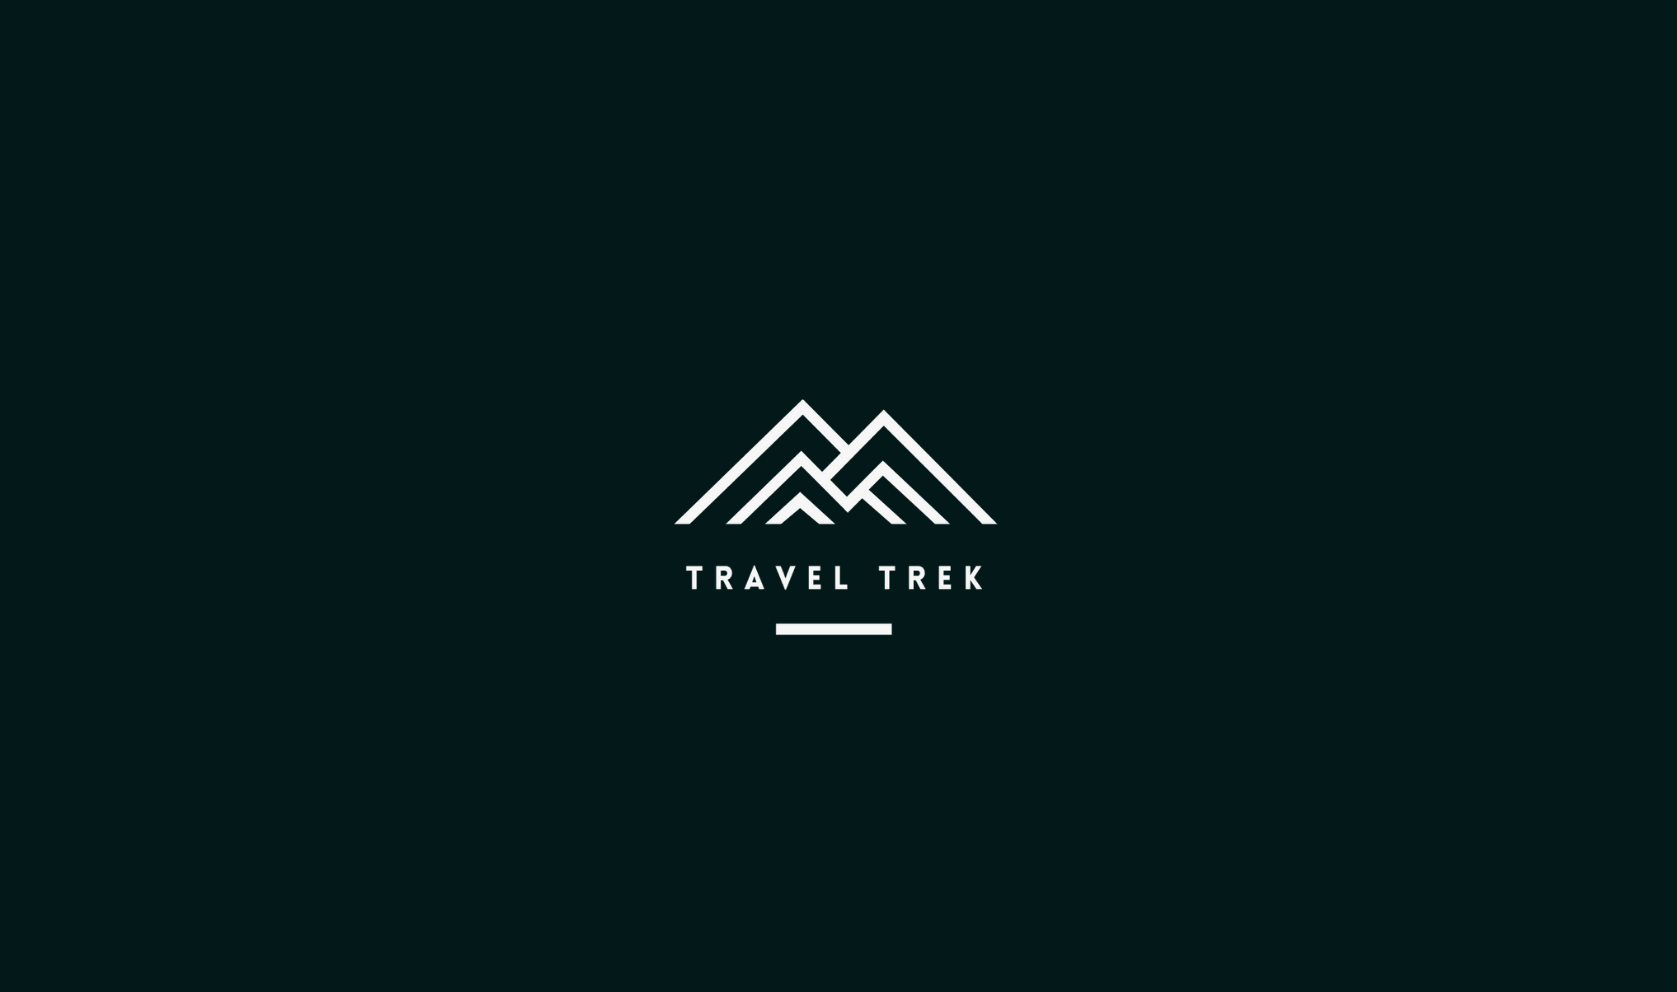 TravelTrek